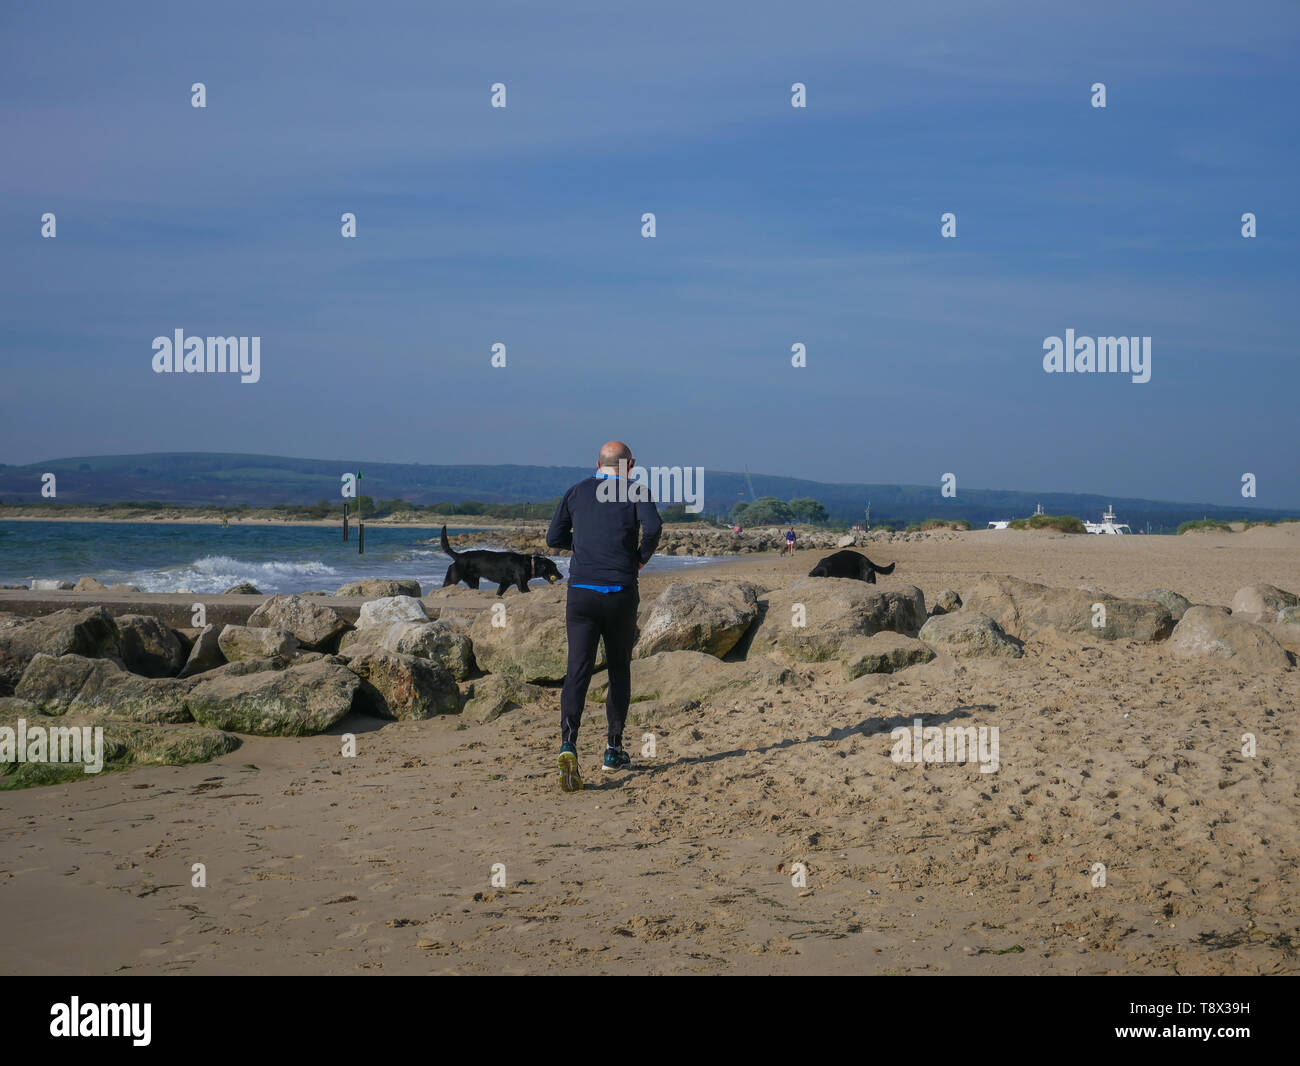 Einen schönen Tag am Strand mit Leuten beim Spaziergang mit ihren Hunden, in der Sonne. Kredit Suzanne McGowan/Alamy leben Nachrichten Stockfoto